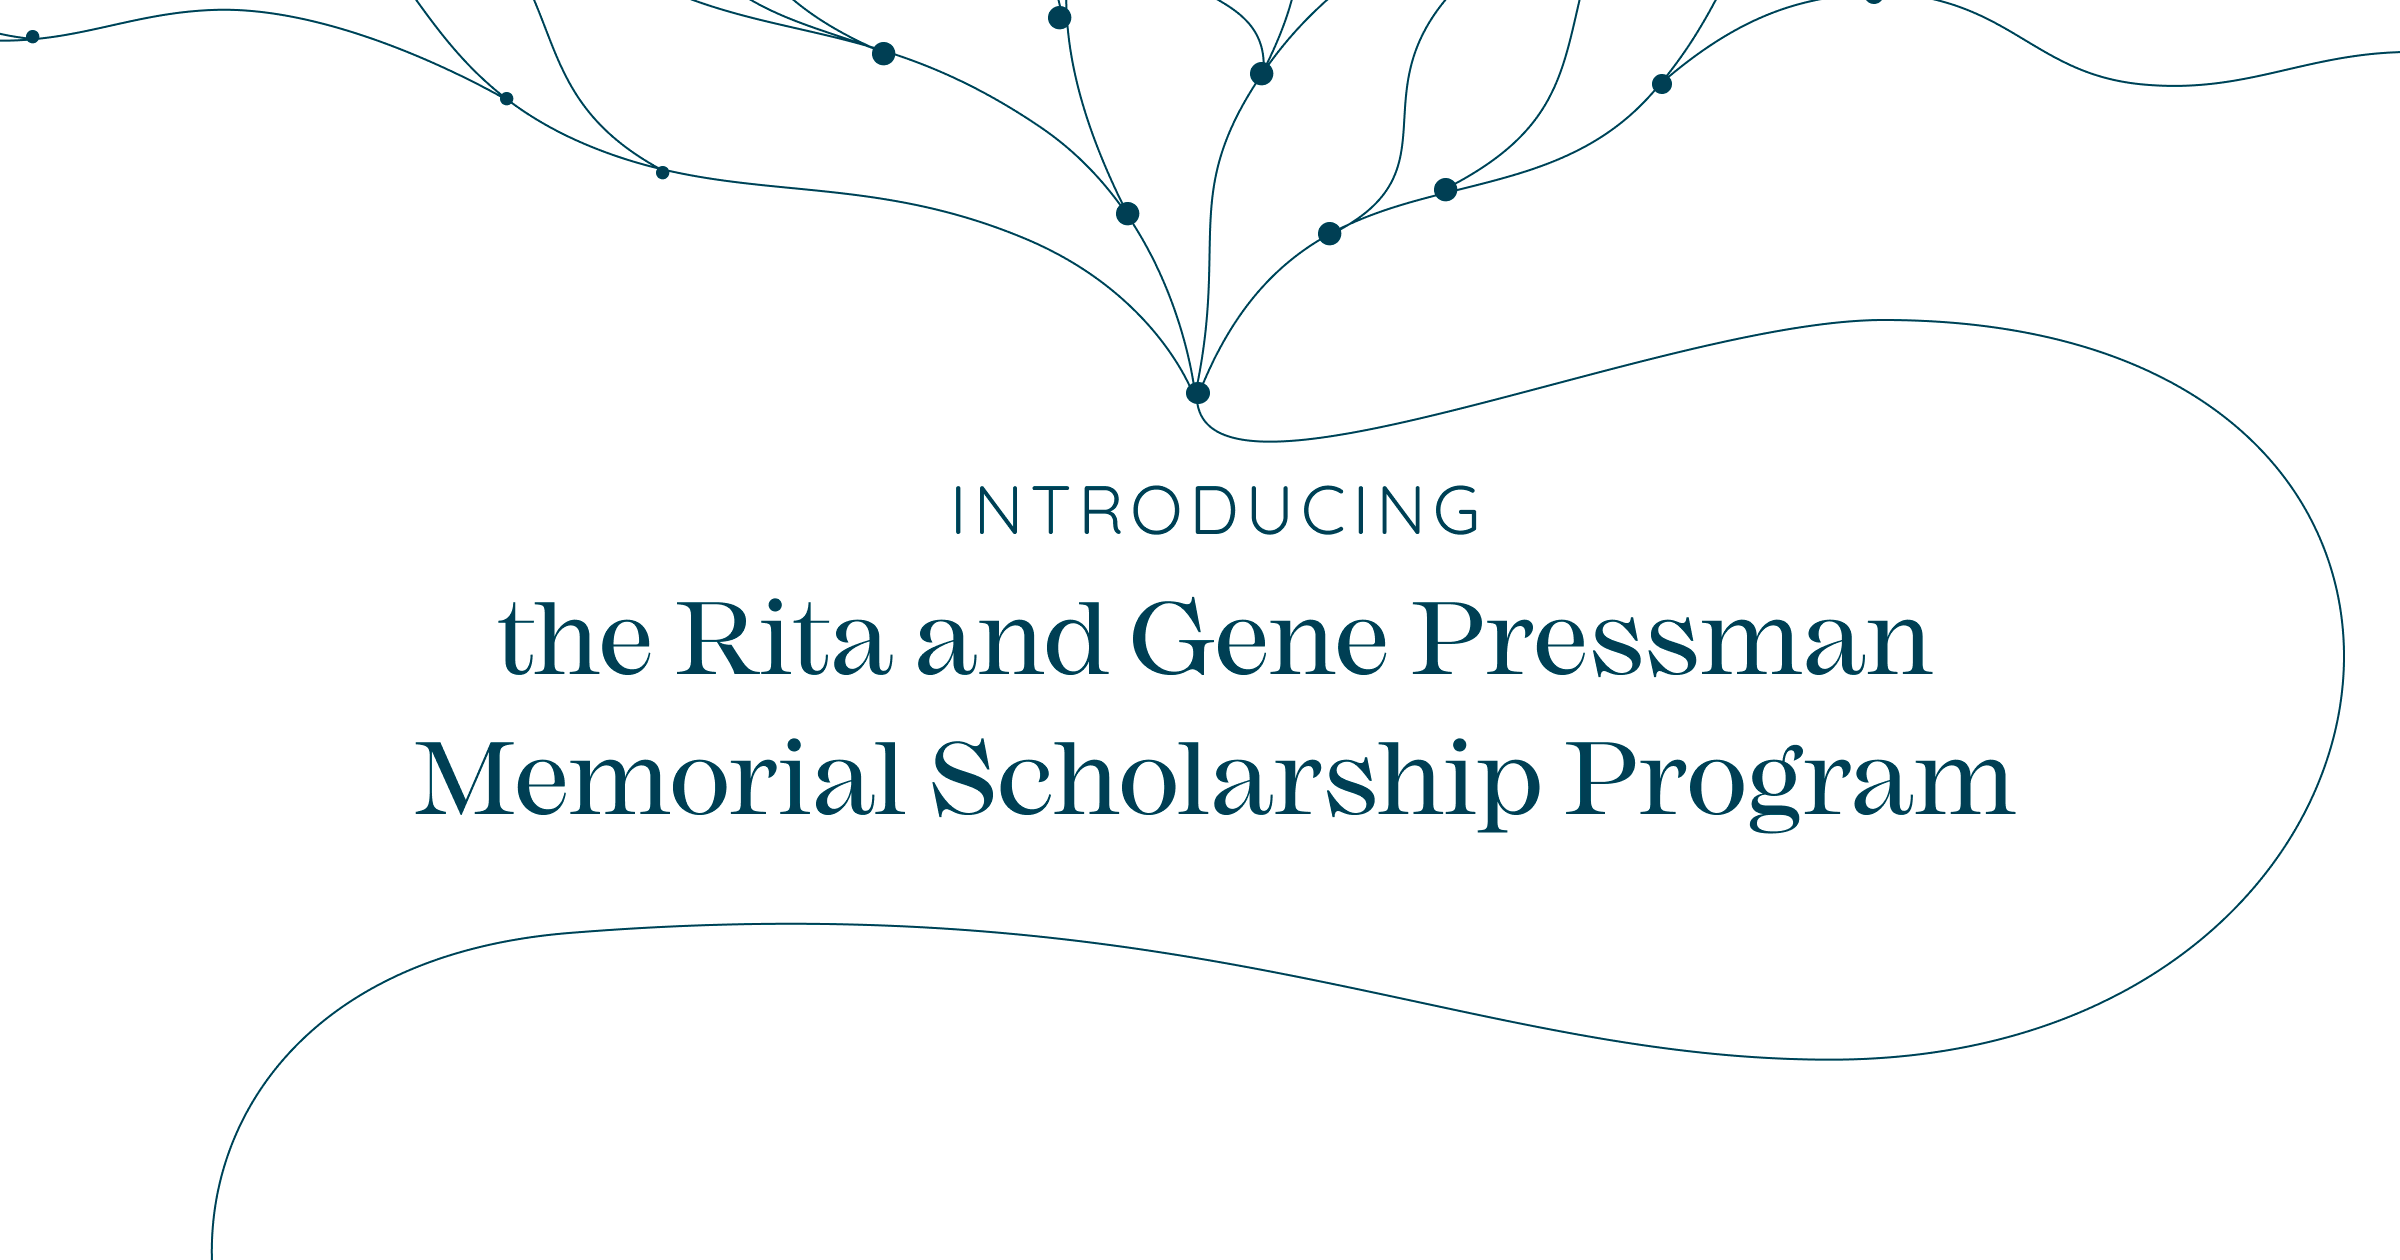 Introducing the Rita and Gene Presman Memorial Scholarship Program